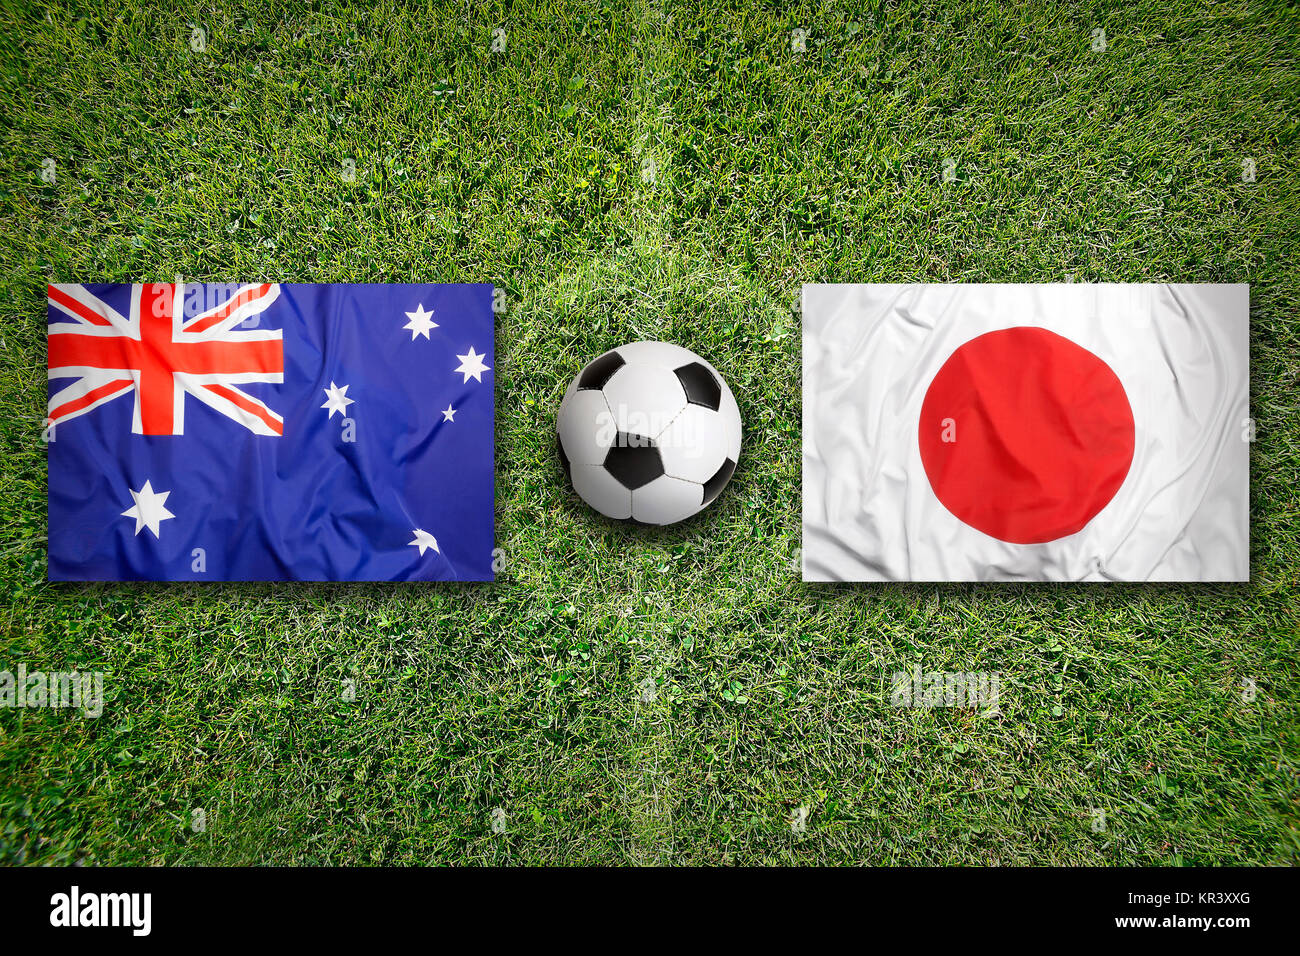 Japan vs australia